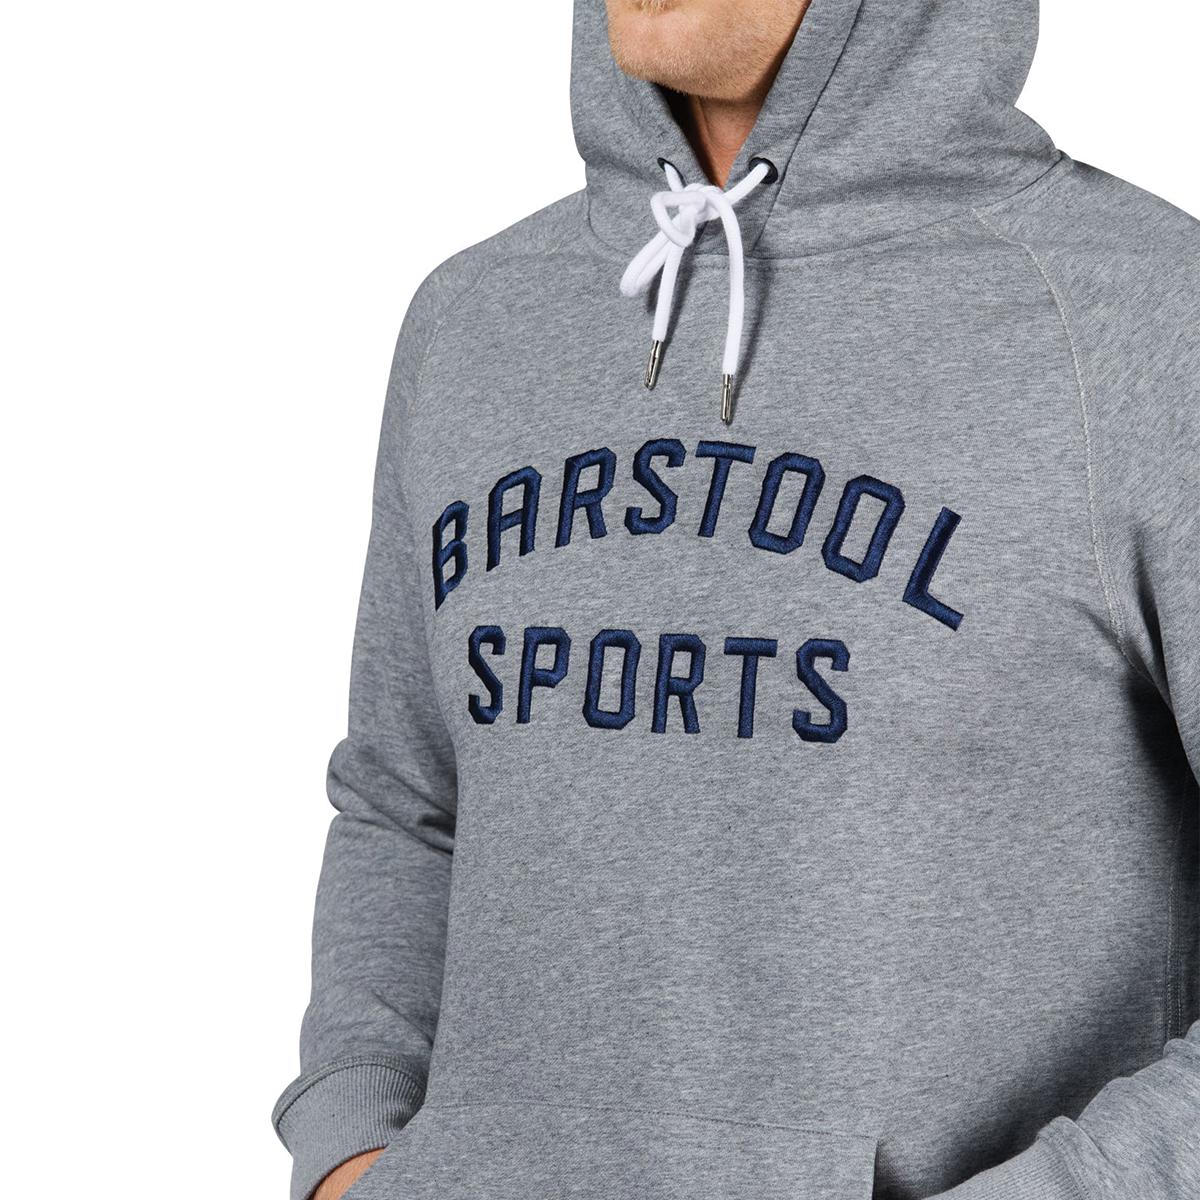 Barstool Sports Printed Hoodie-Hoodies & Sweatshirts-Barstool Sports-Barstool Sports